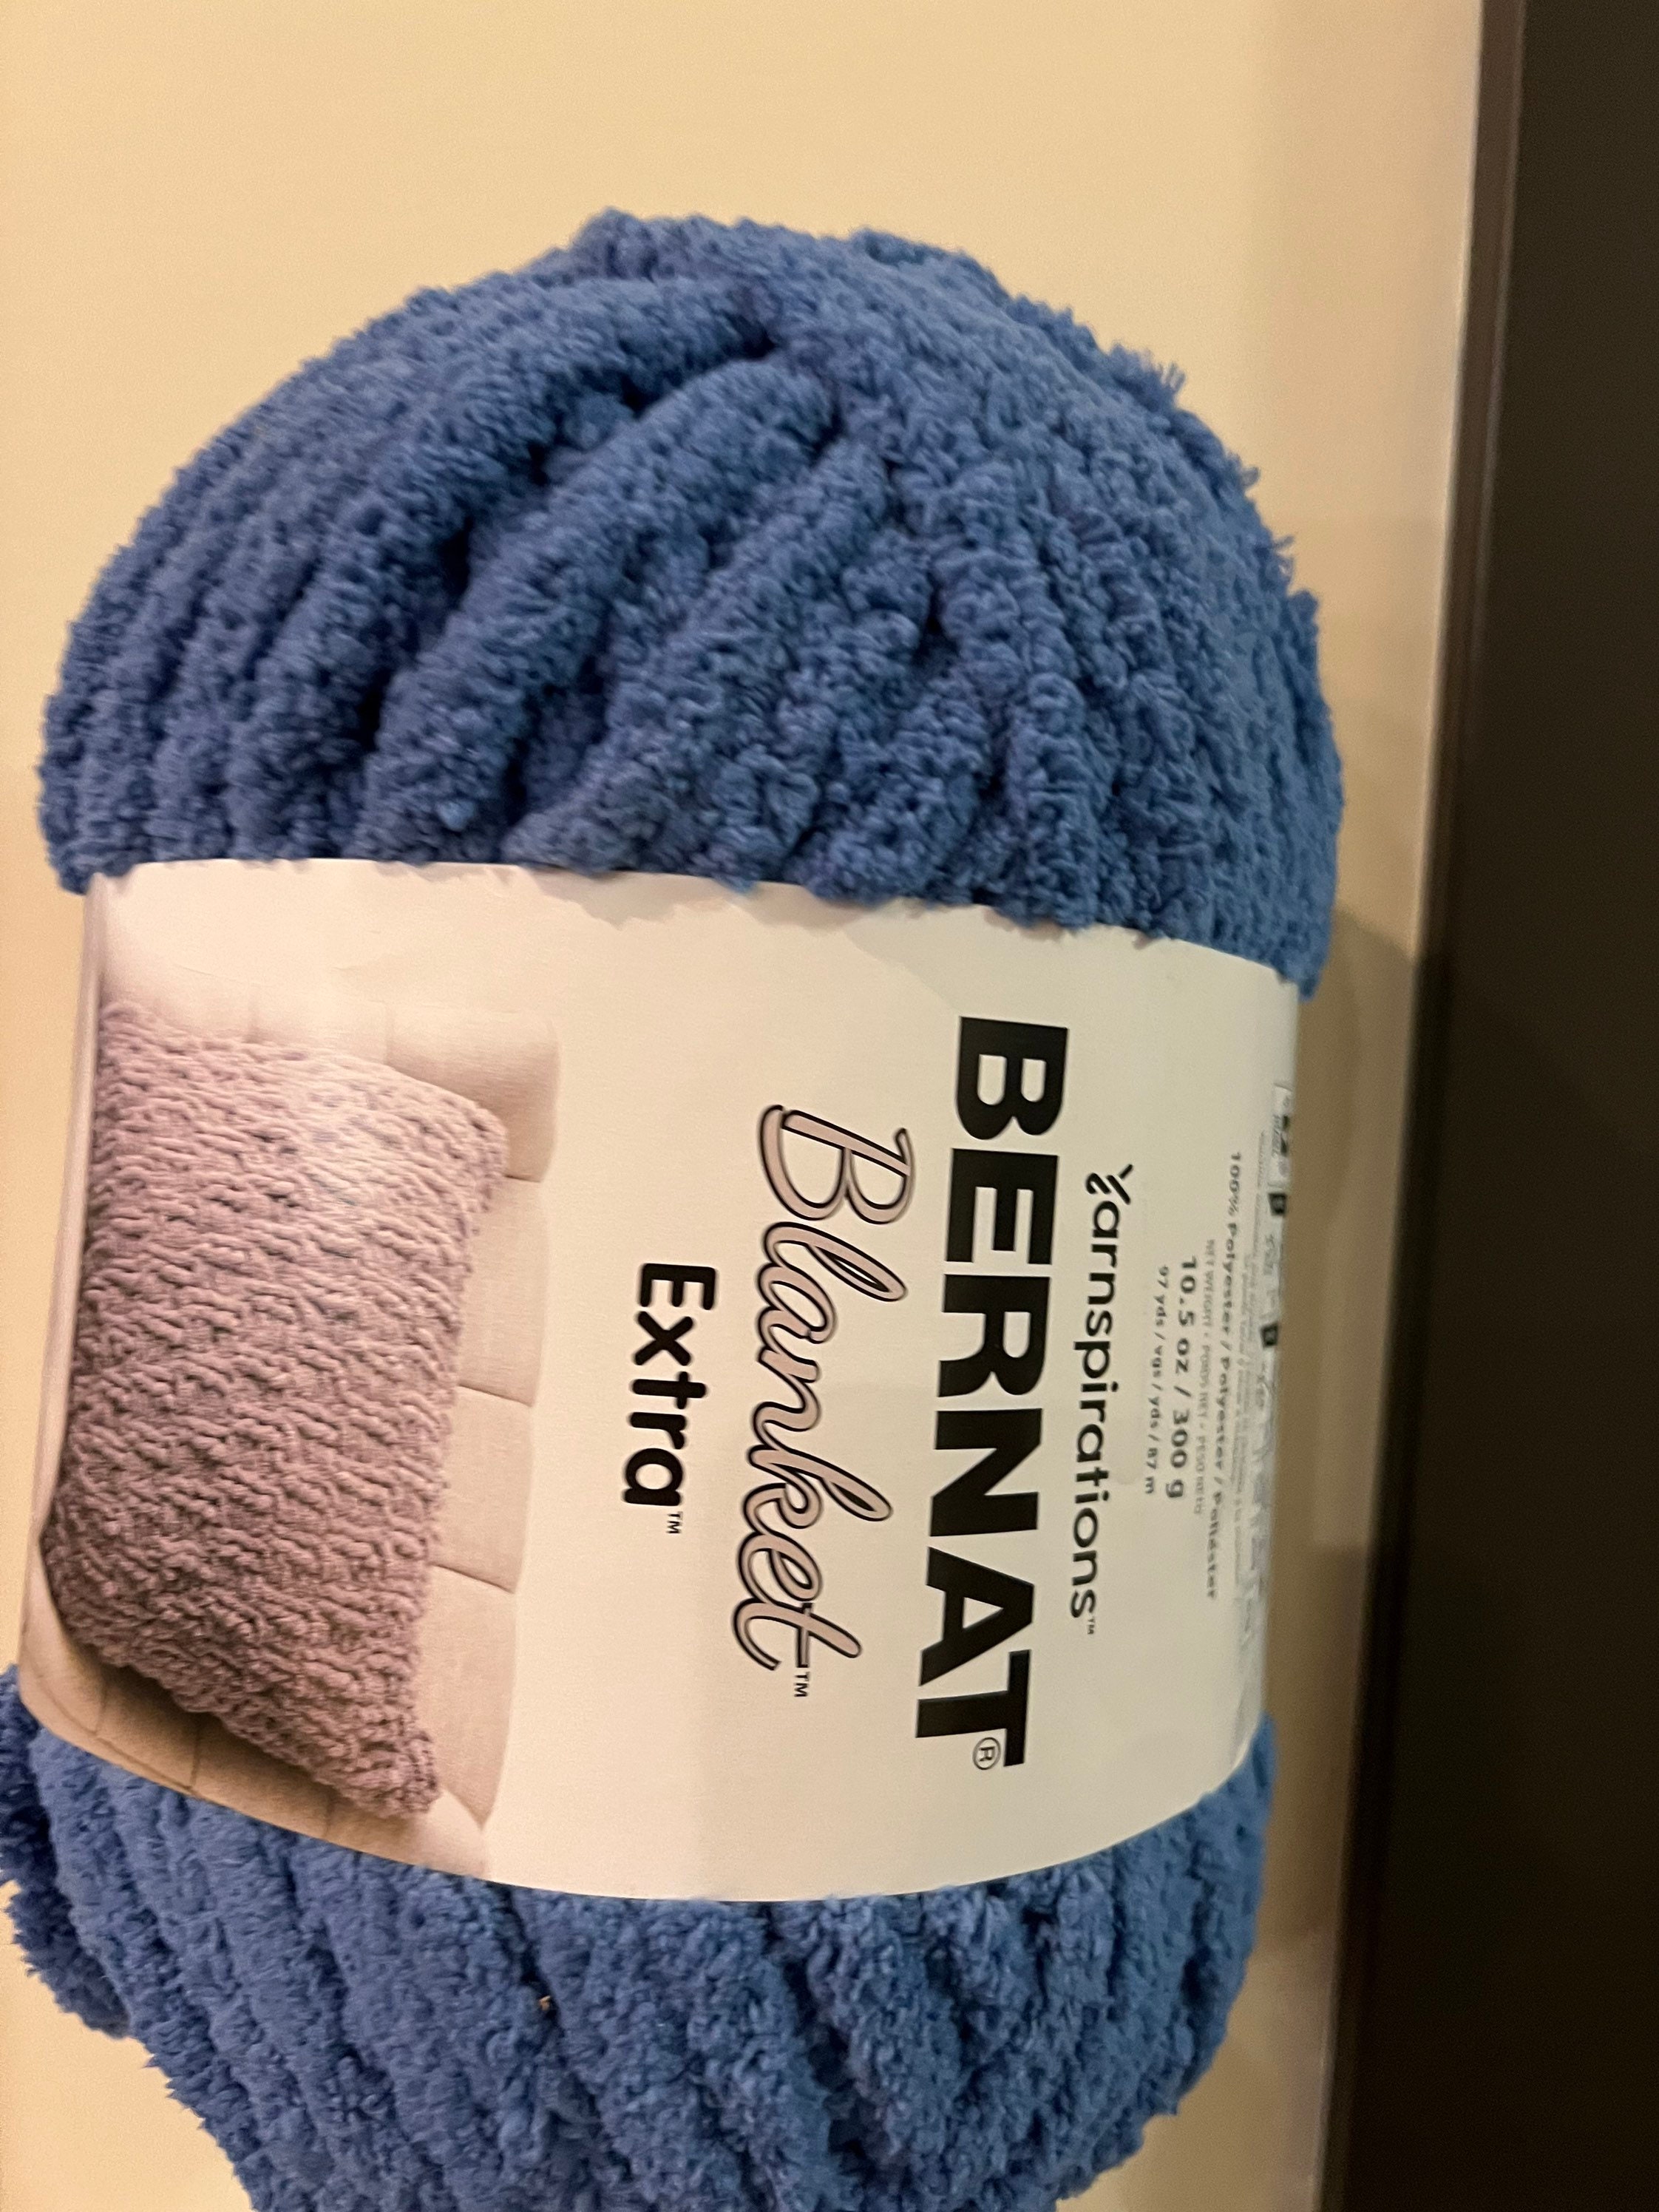 Bernat Blanket Extra Yarn Indigo Blue 10.5 oz 97 yds Knitting Skein